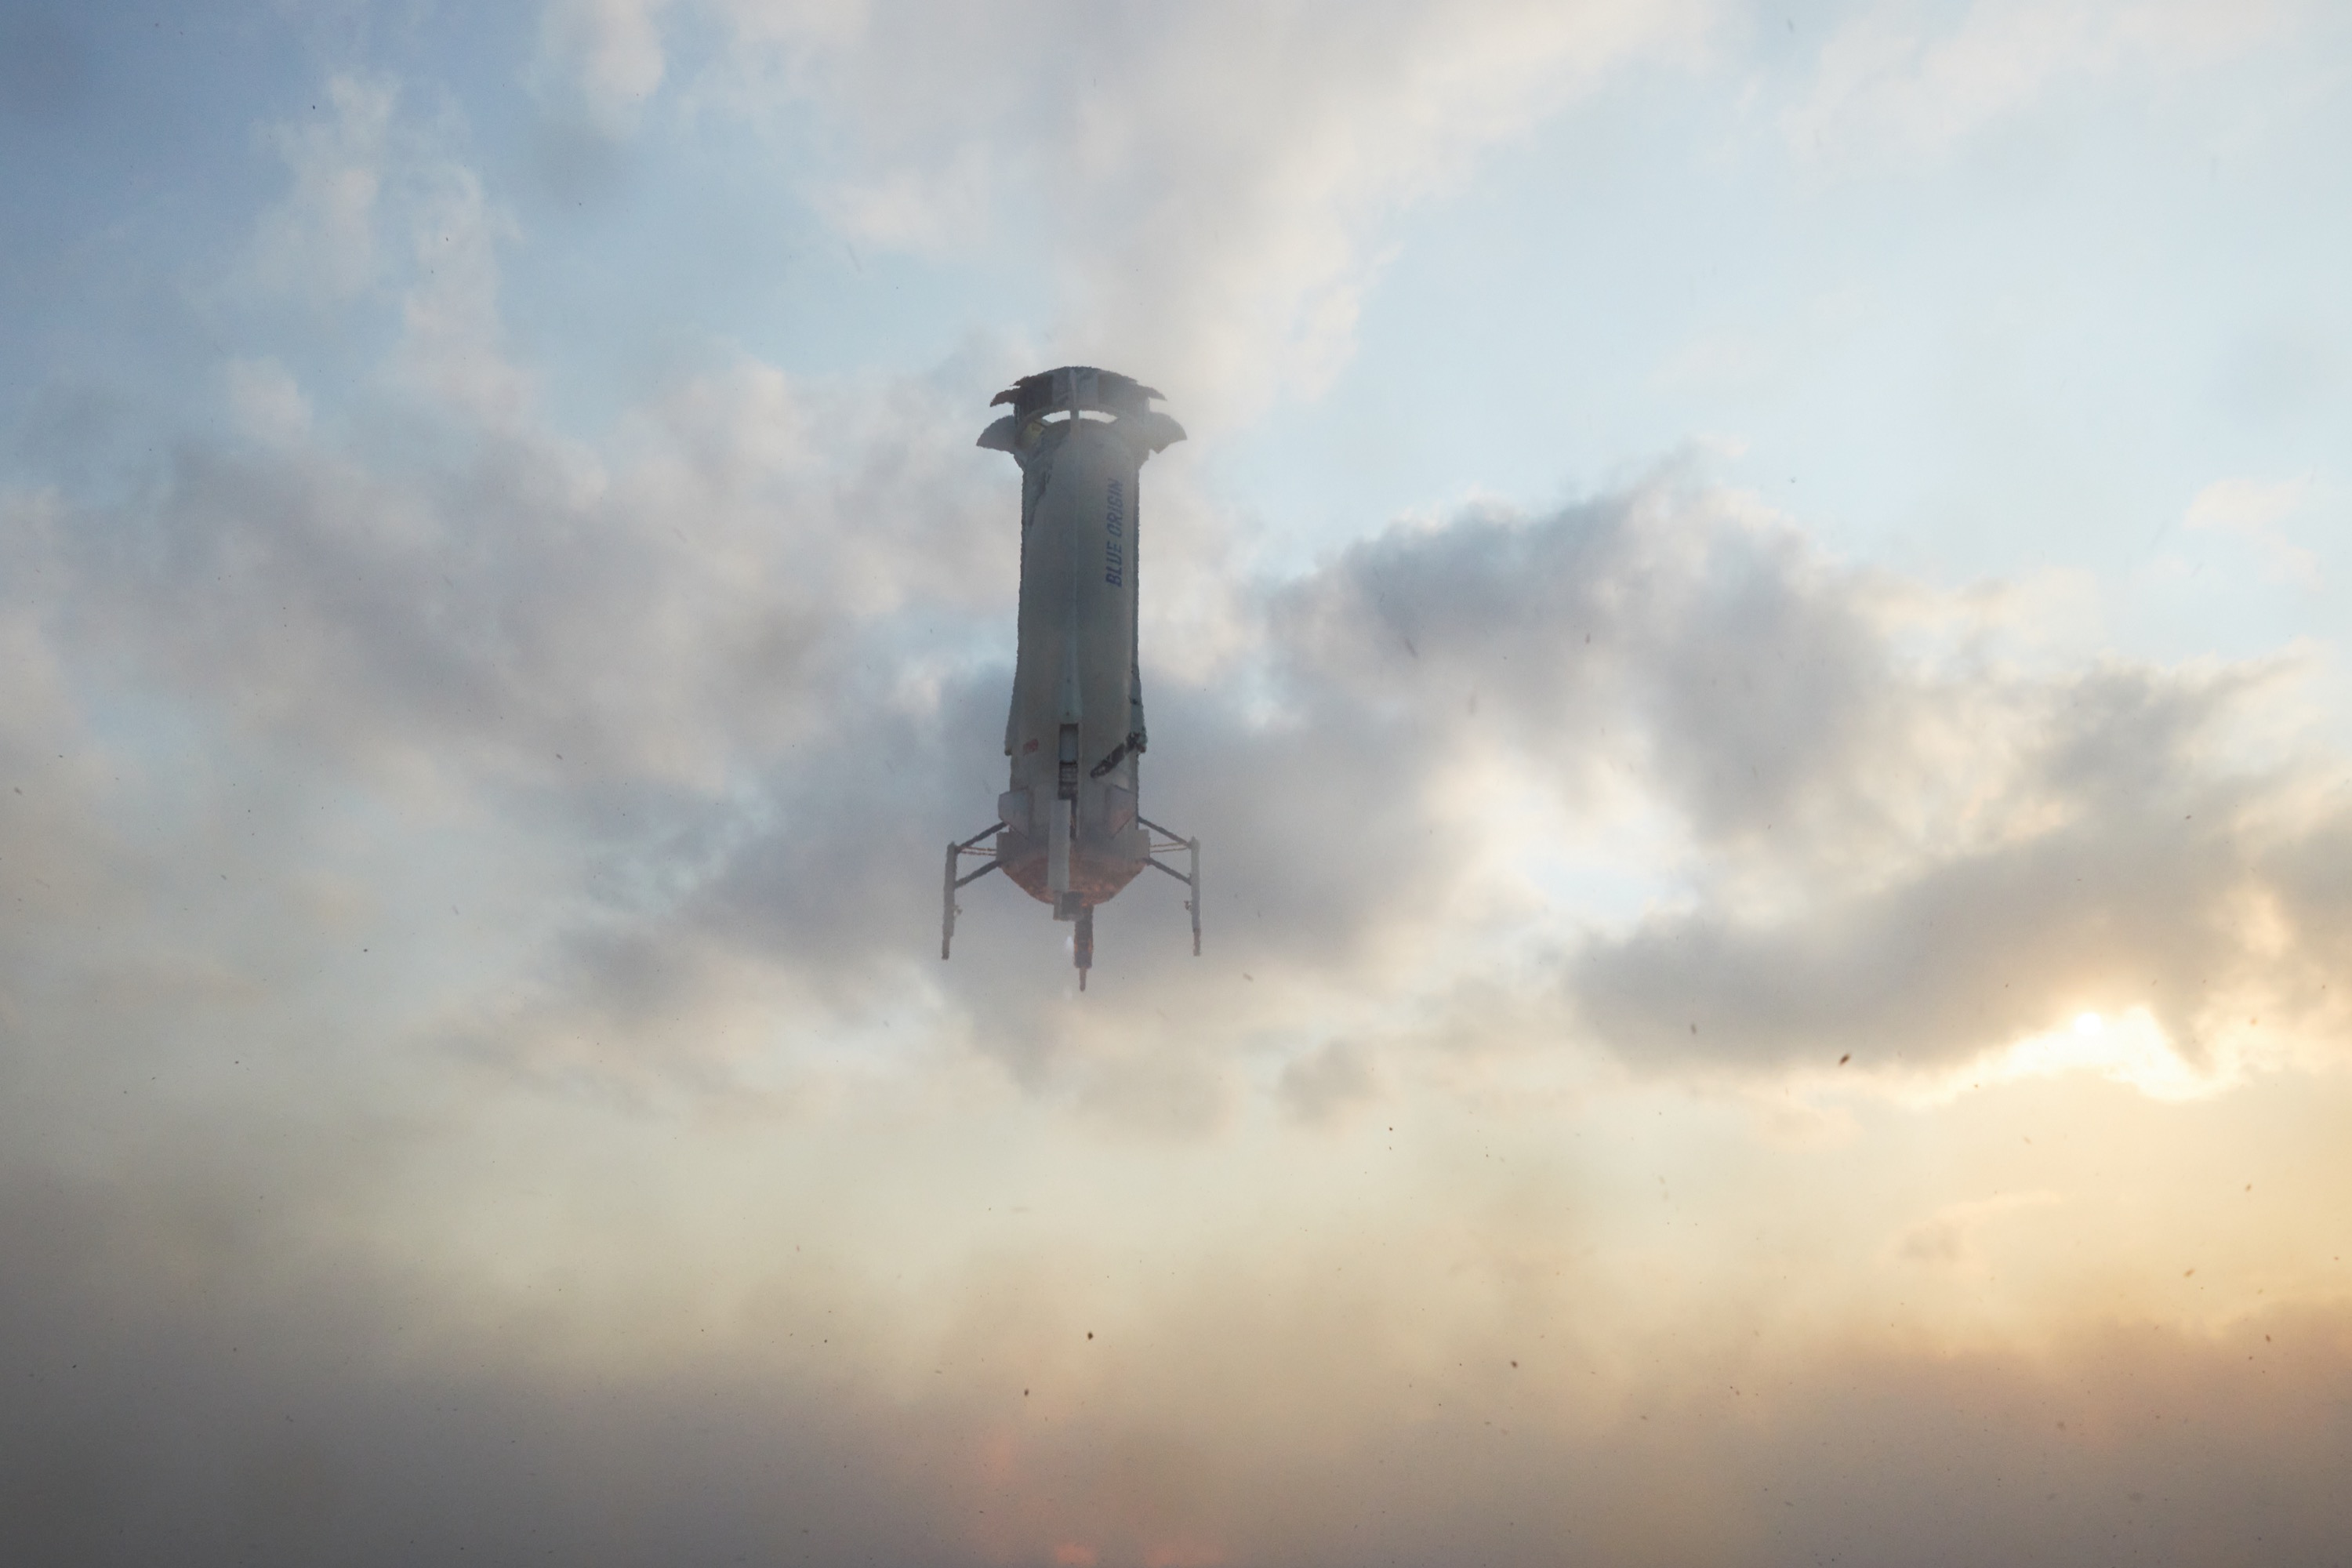 Ракета New Shepard совершит полет с шестью туристами